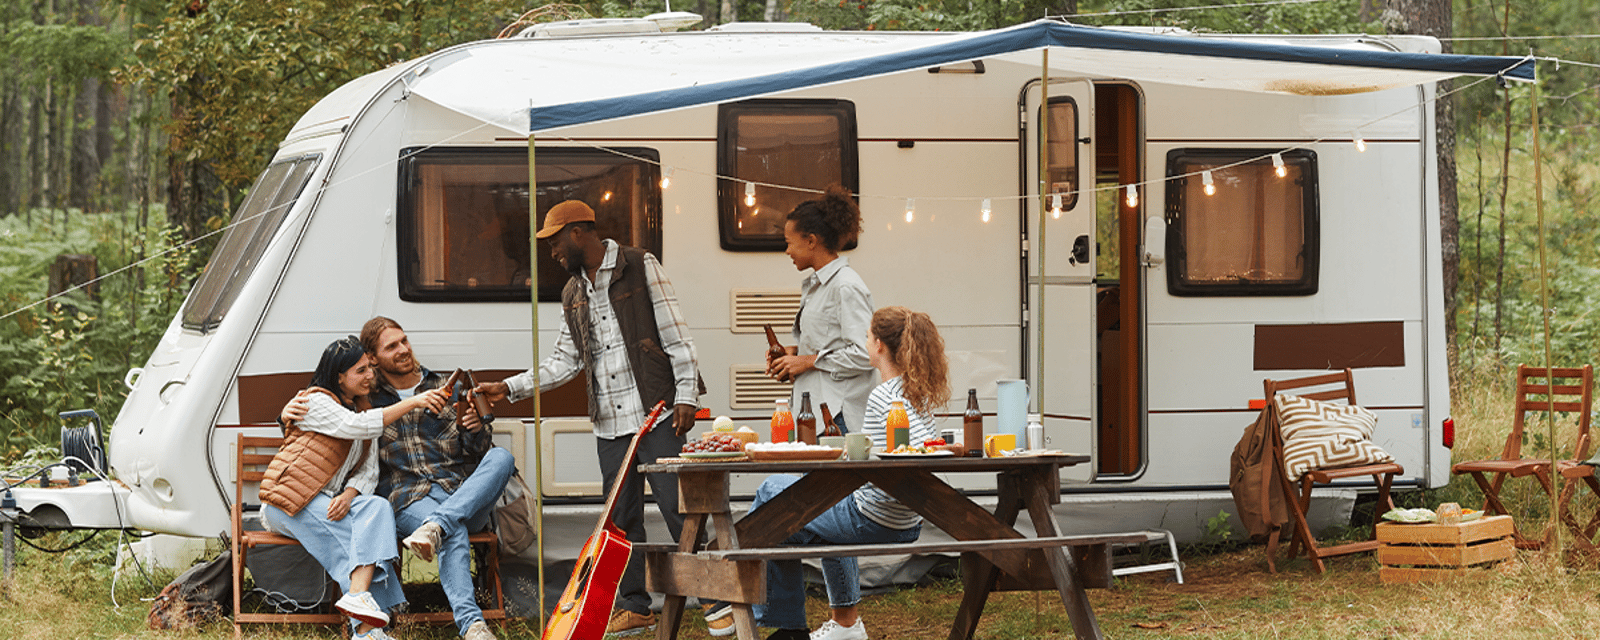 Le camping est une activité qui coûte de plus en plus cher